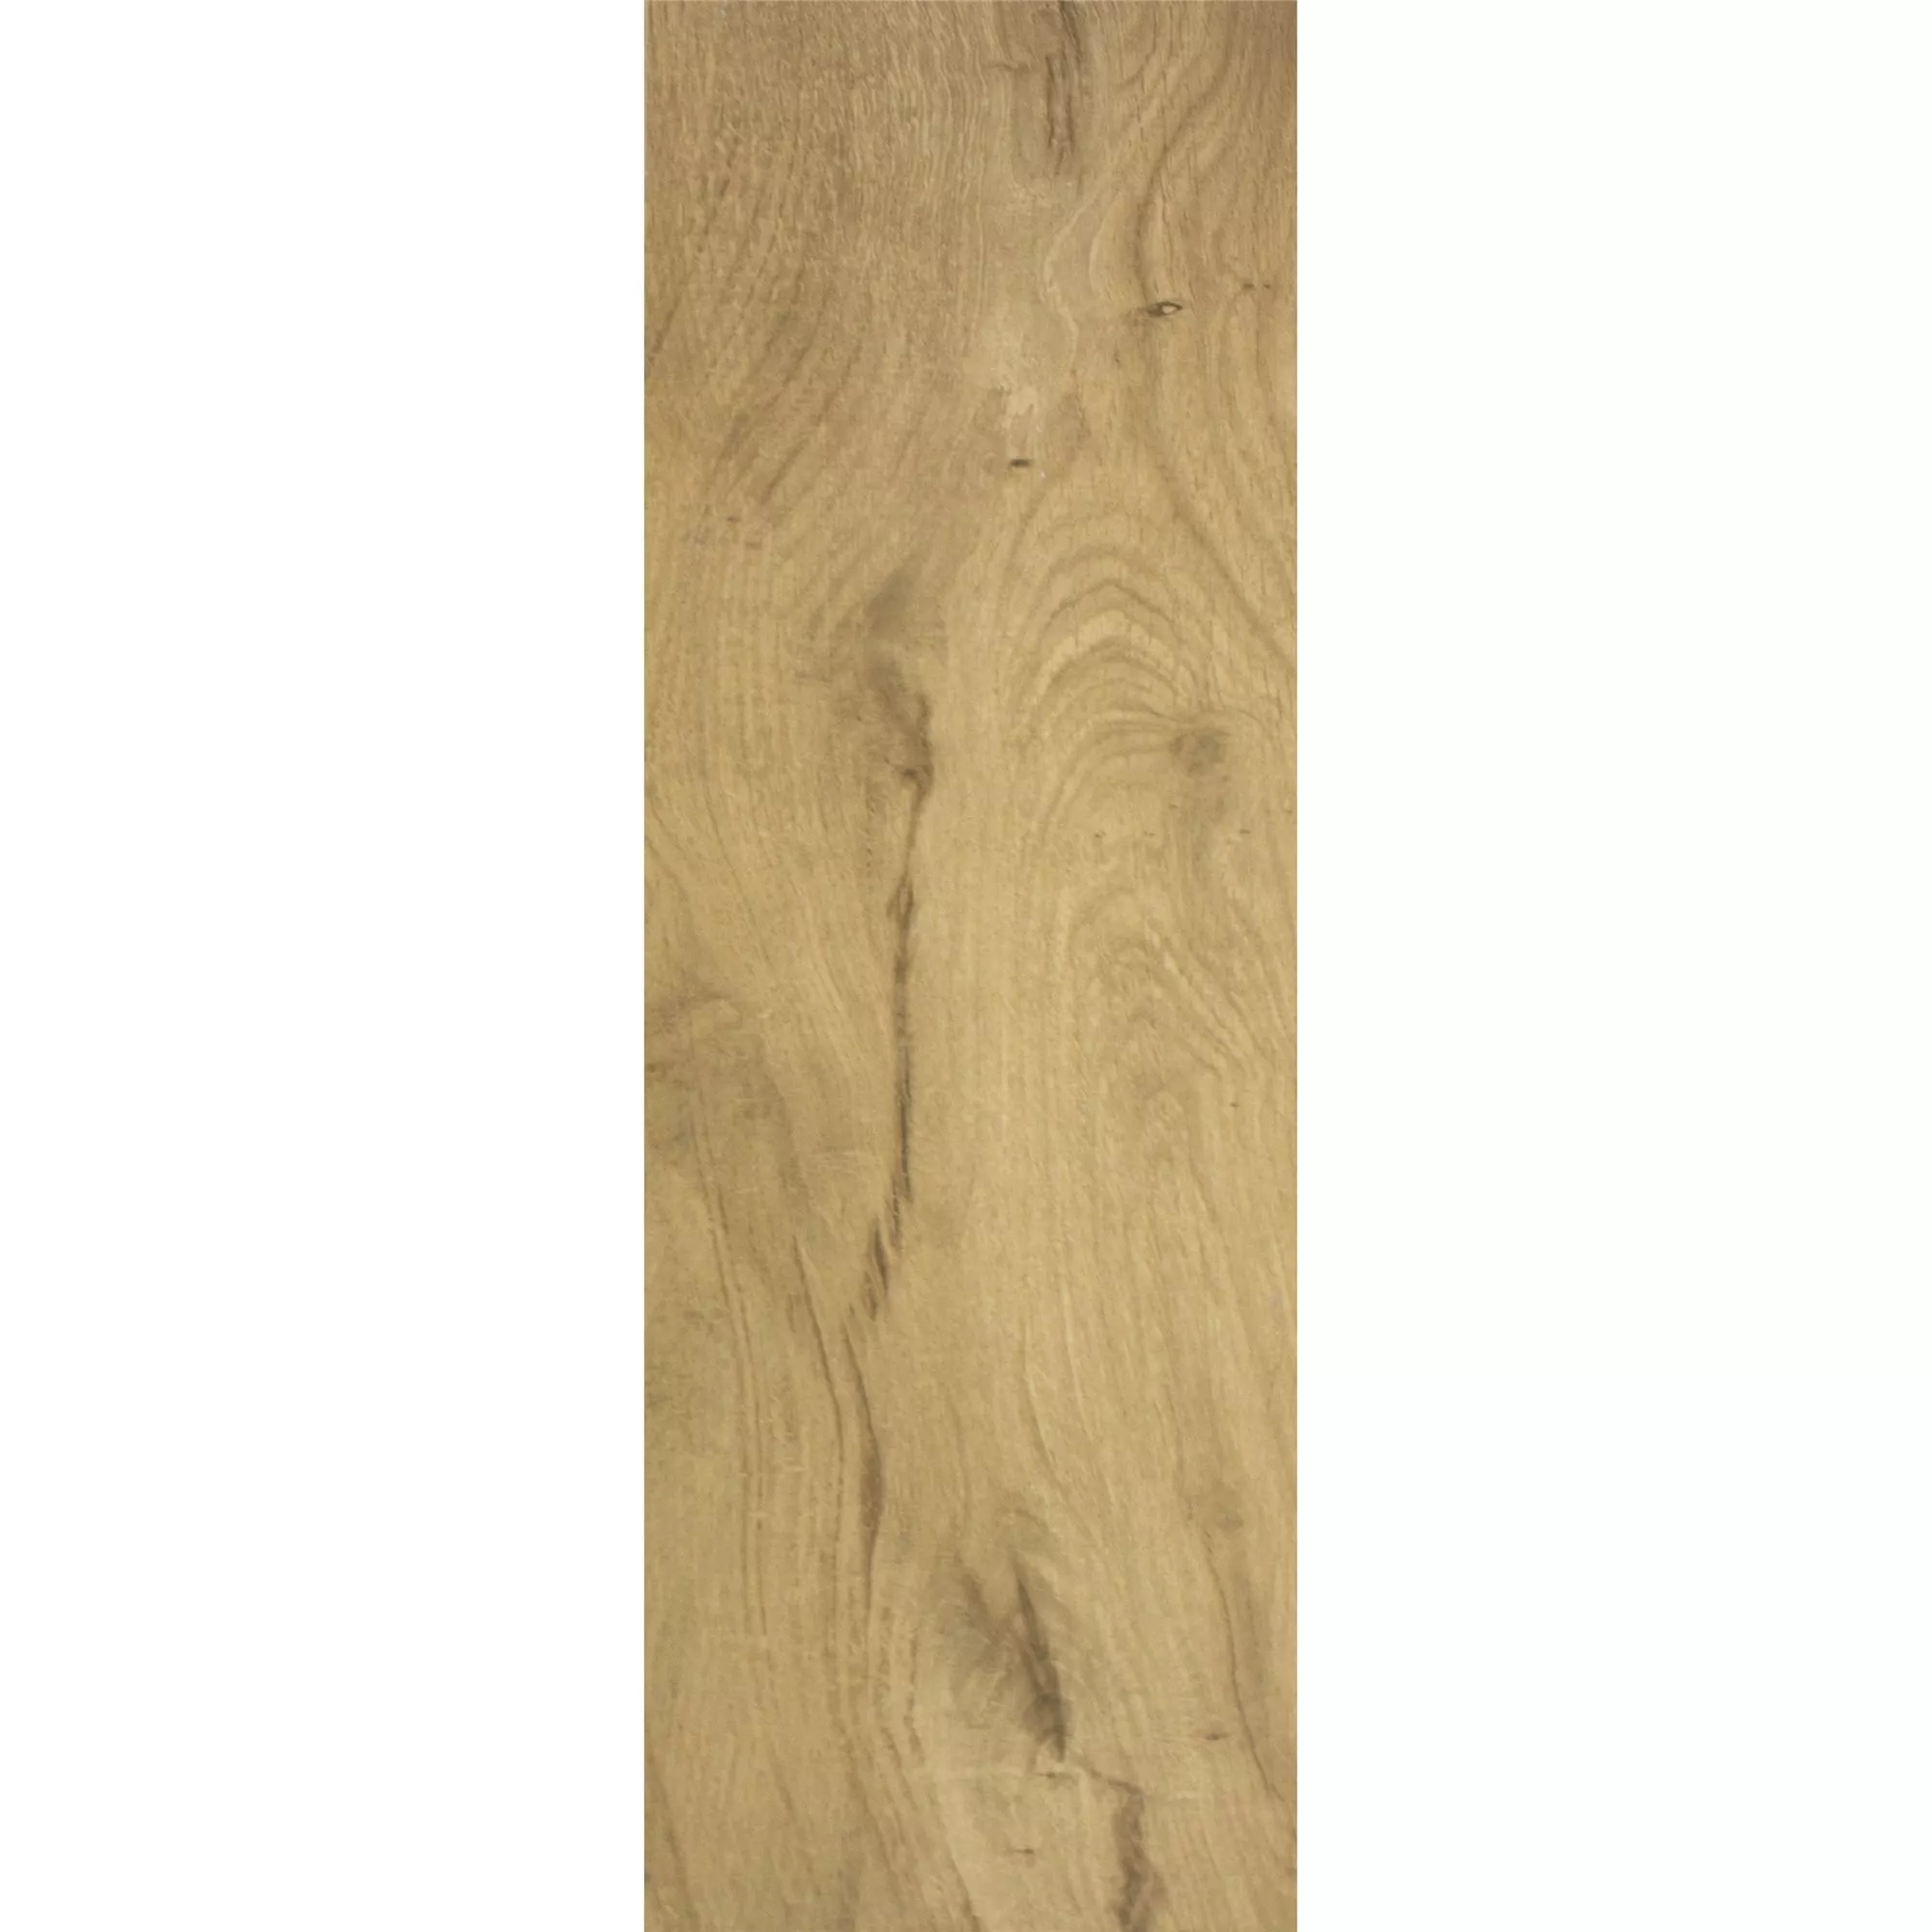 Próbka Płytki Podłogowe Herakles Wygląd Drewna Almond 20x120cm